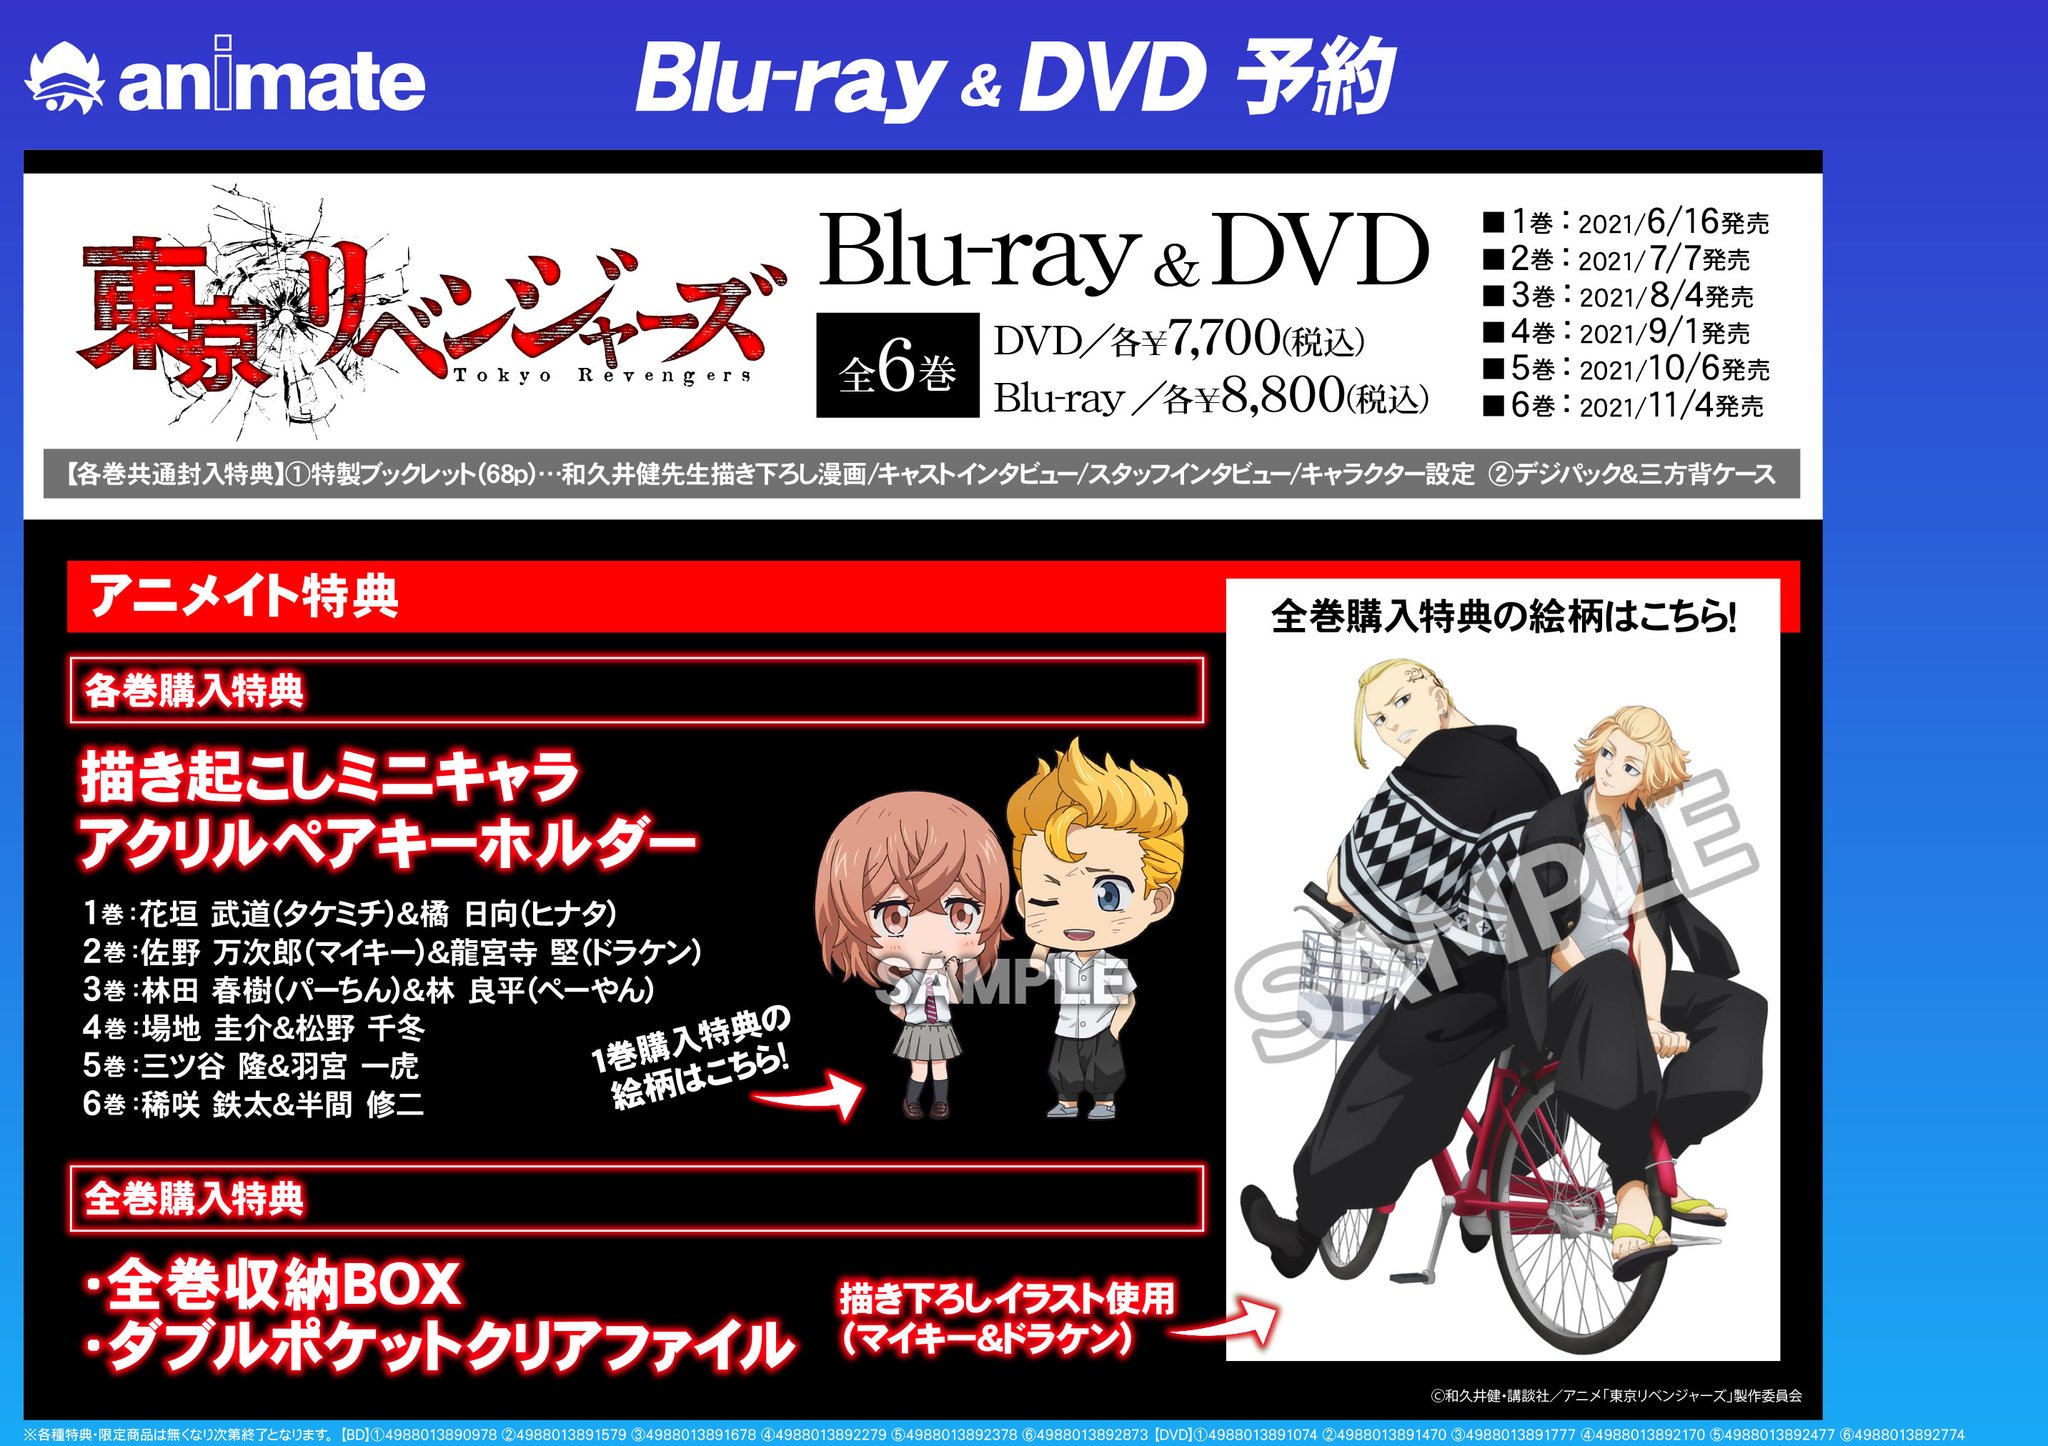 東京リベンジャーズ Blu-ray全6巻セット 収納BOX付き